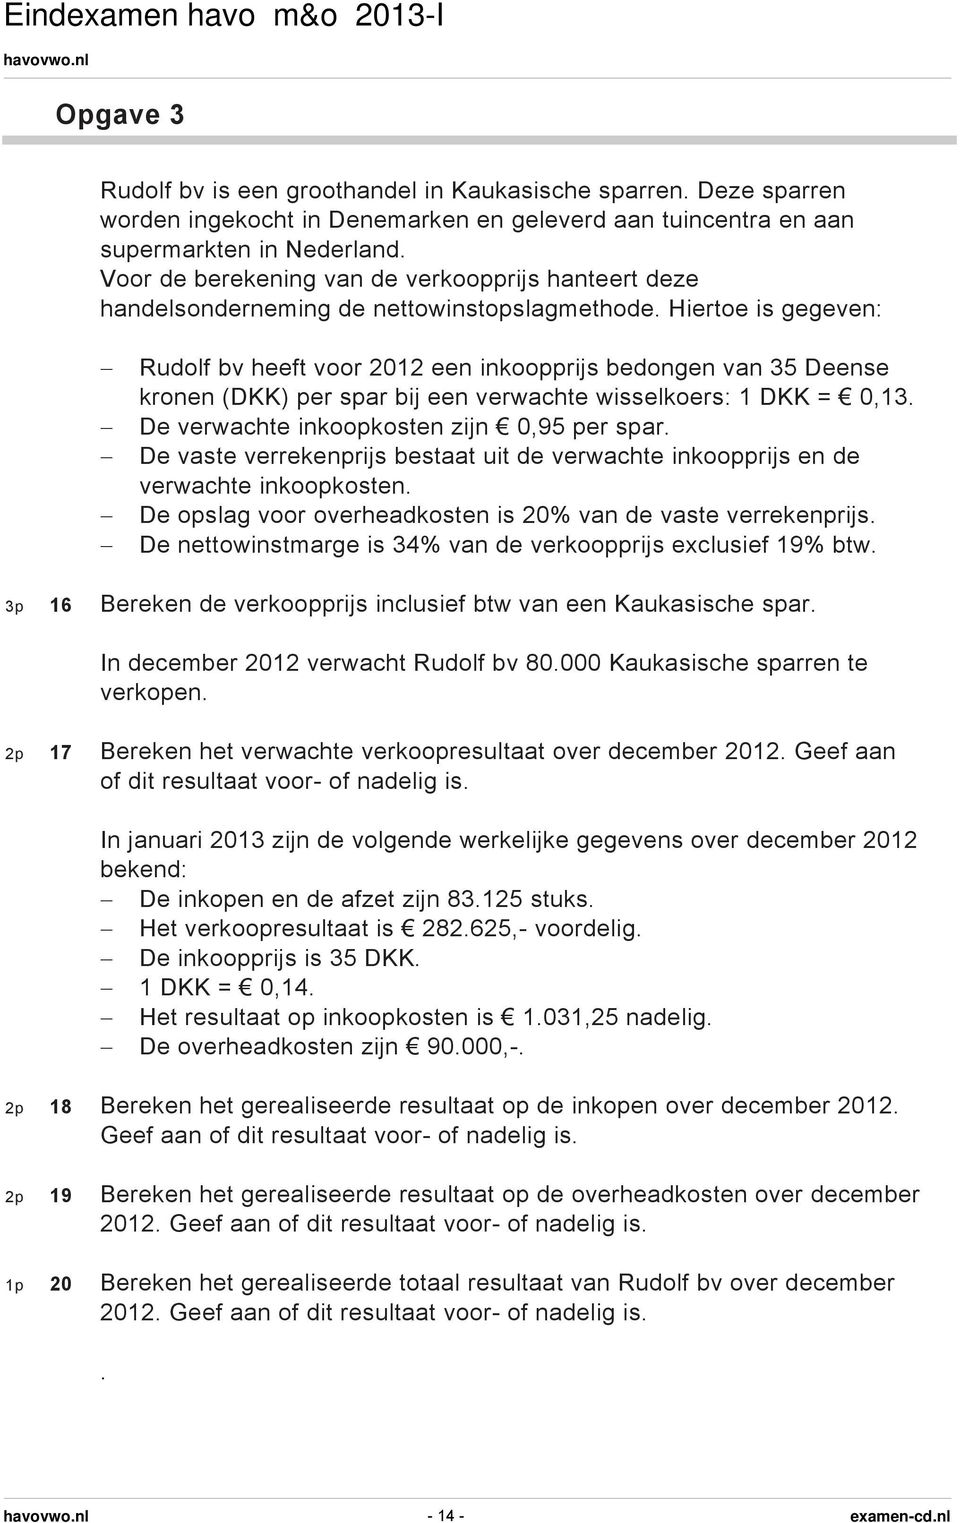 Hiertoe is gegeven: Rudolf bv heeft voor 2012 een inkoopprijs bedongen van 35 Deense kronen (DKK) per spar bij een verwachte wisselkoers: 1 DKK = 0,13. De verwachte inkoopkosten zijn 0,95 per spar.